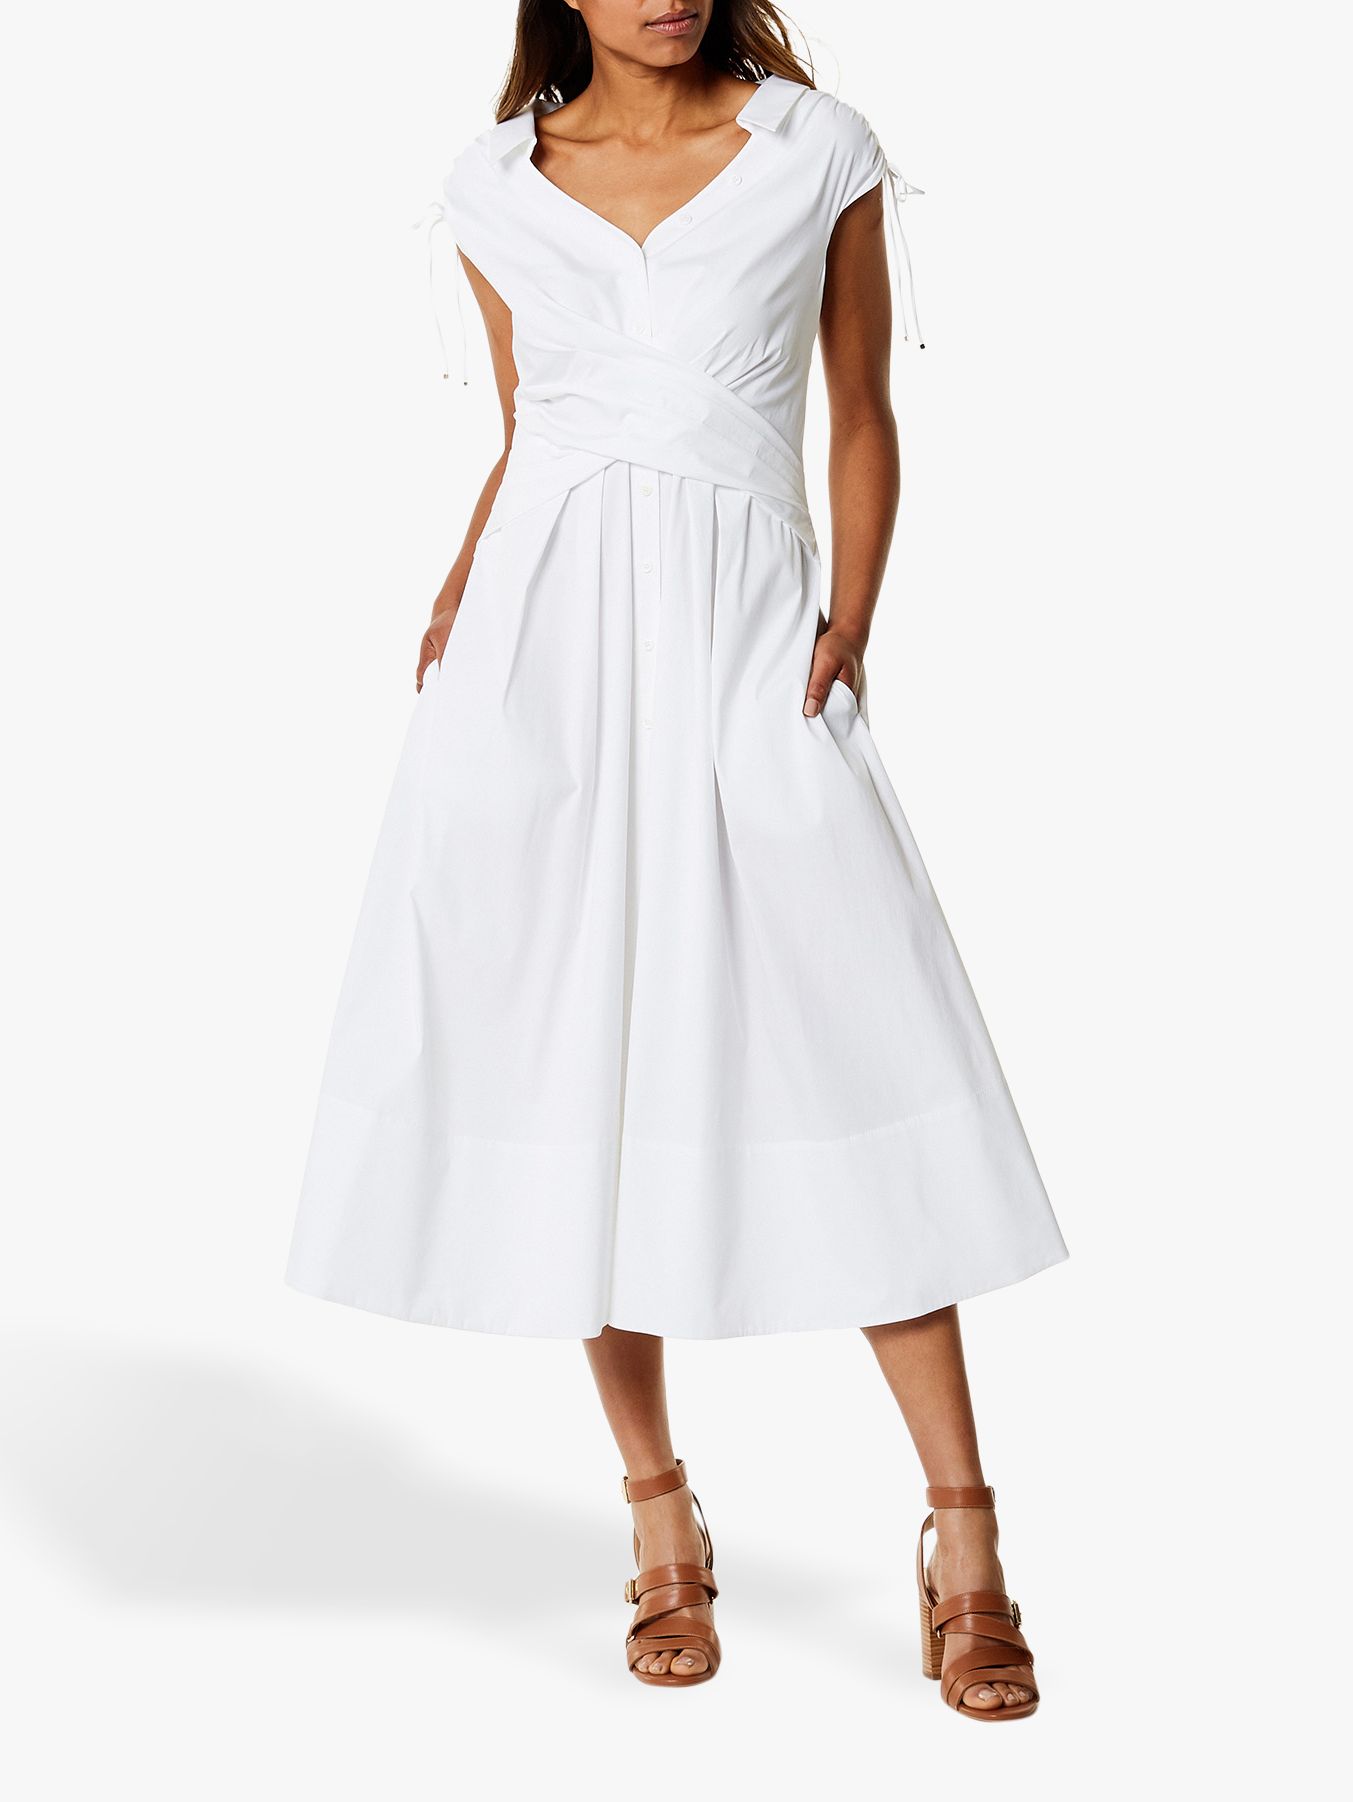  Karen  Millen  Wrap Shirt  Dress  White at John Lewis Partners